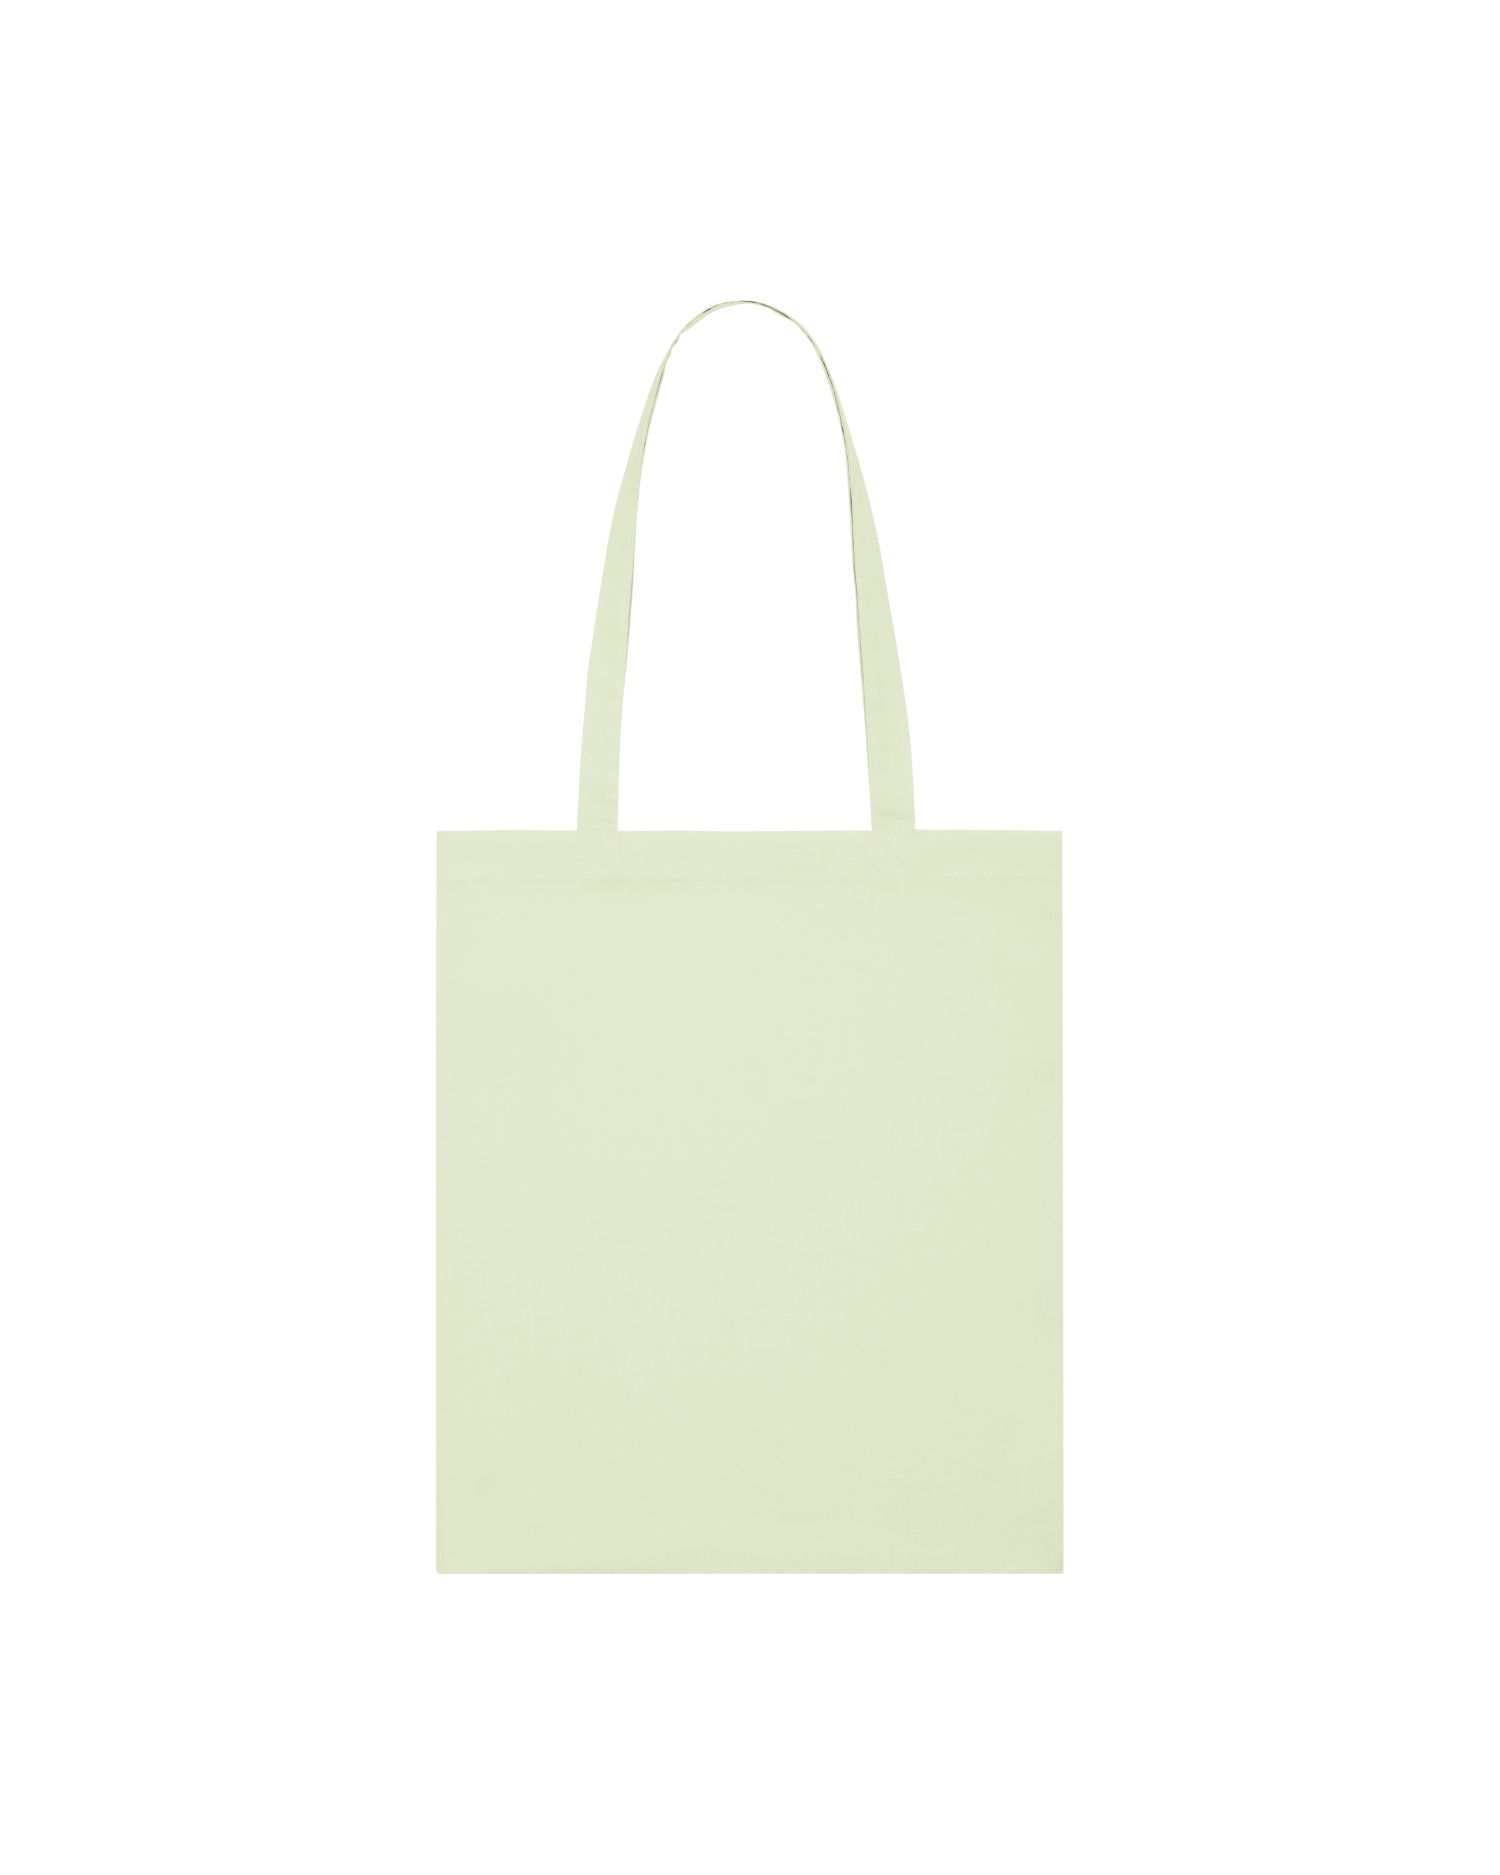  Light Tote Bag in Farbe Stem Green